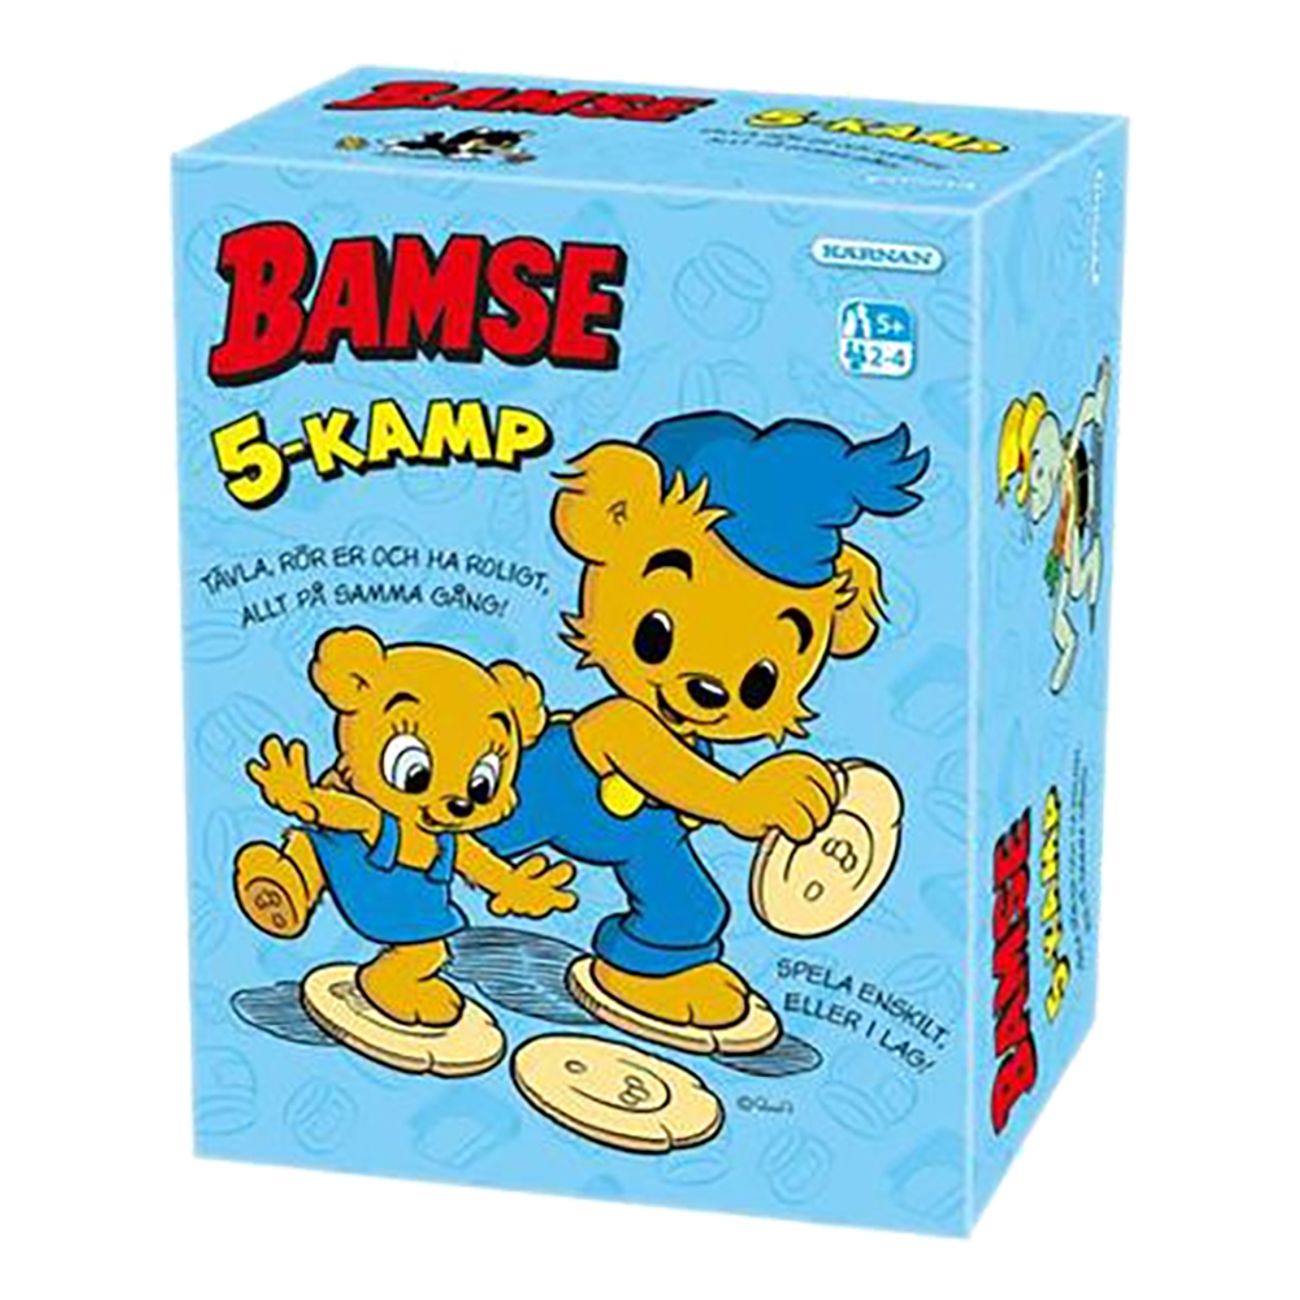 bamse-5-kamp-78865-1